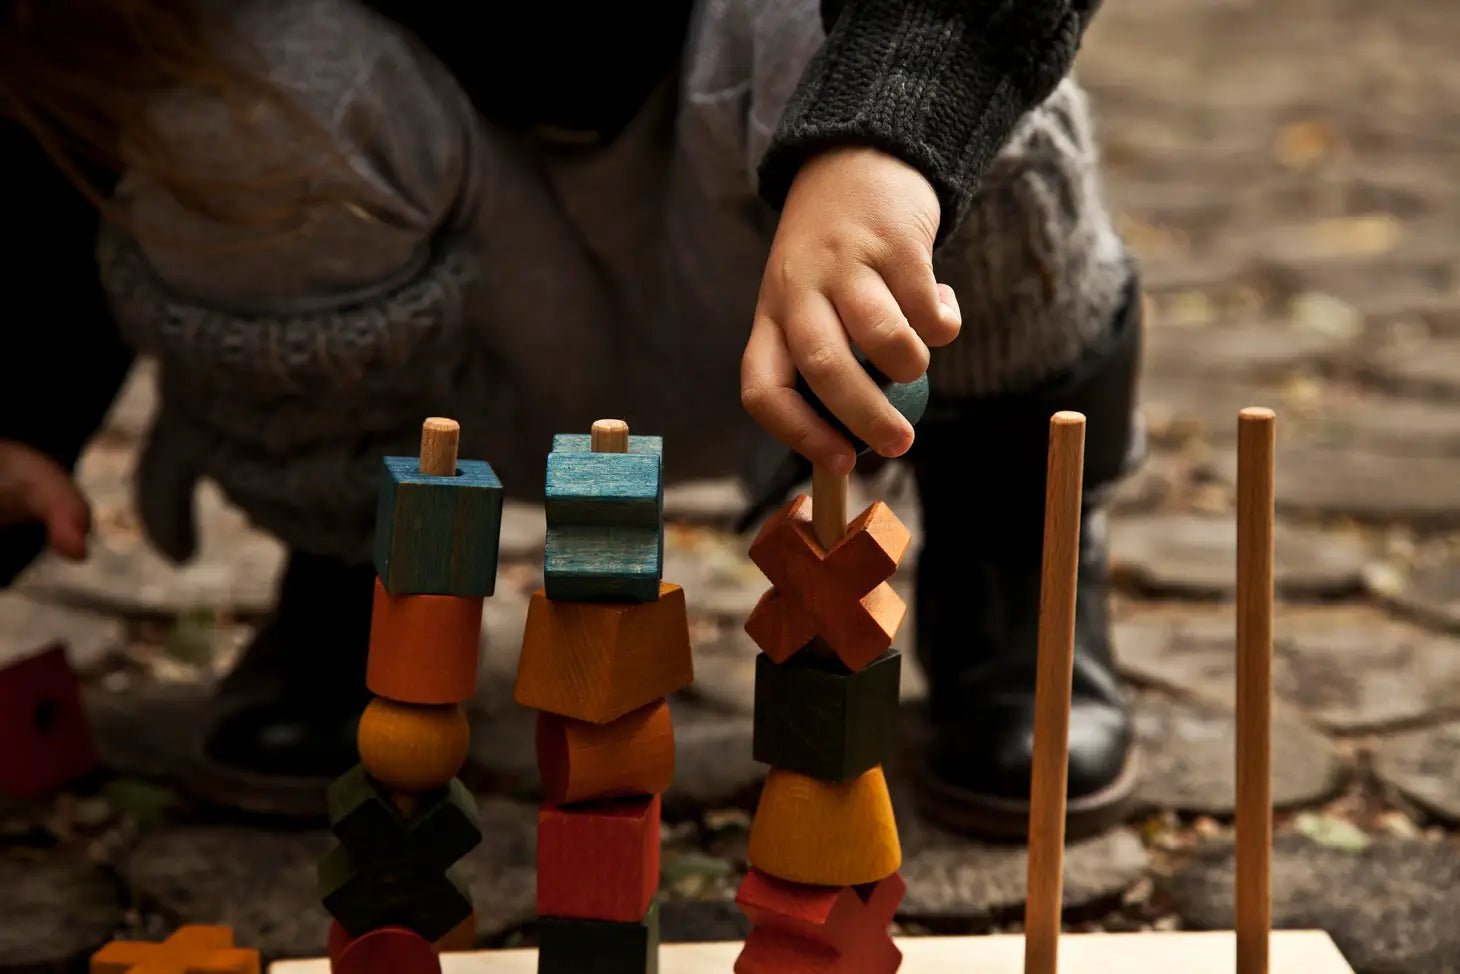 Wooden Story - Montessori stapeltorens - regenboog - Playlaan